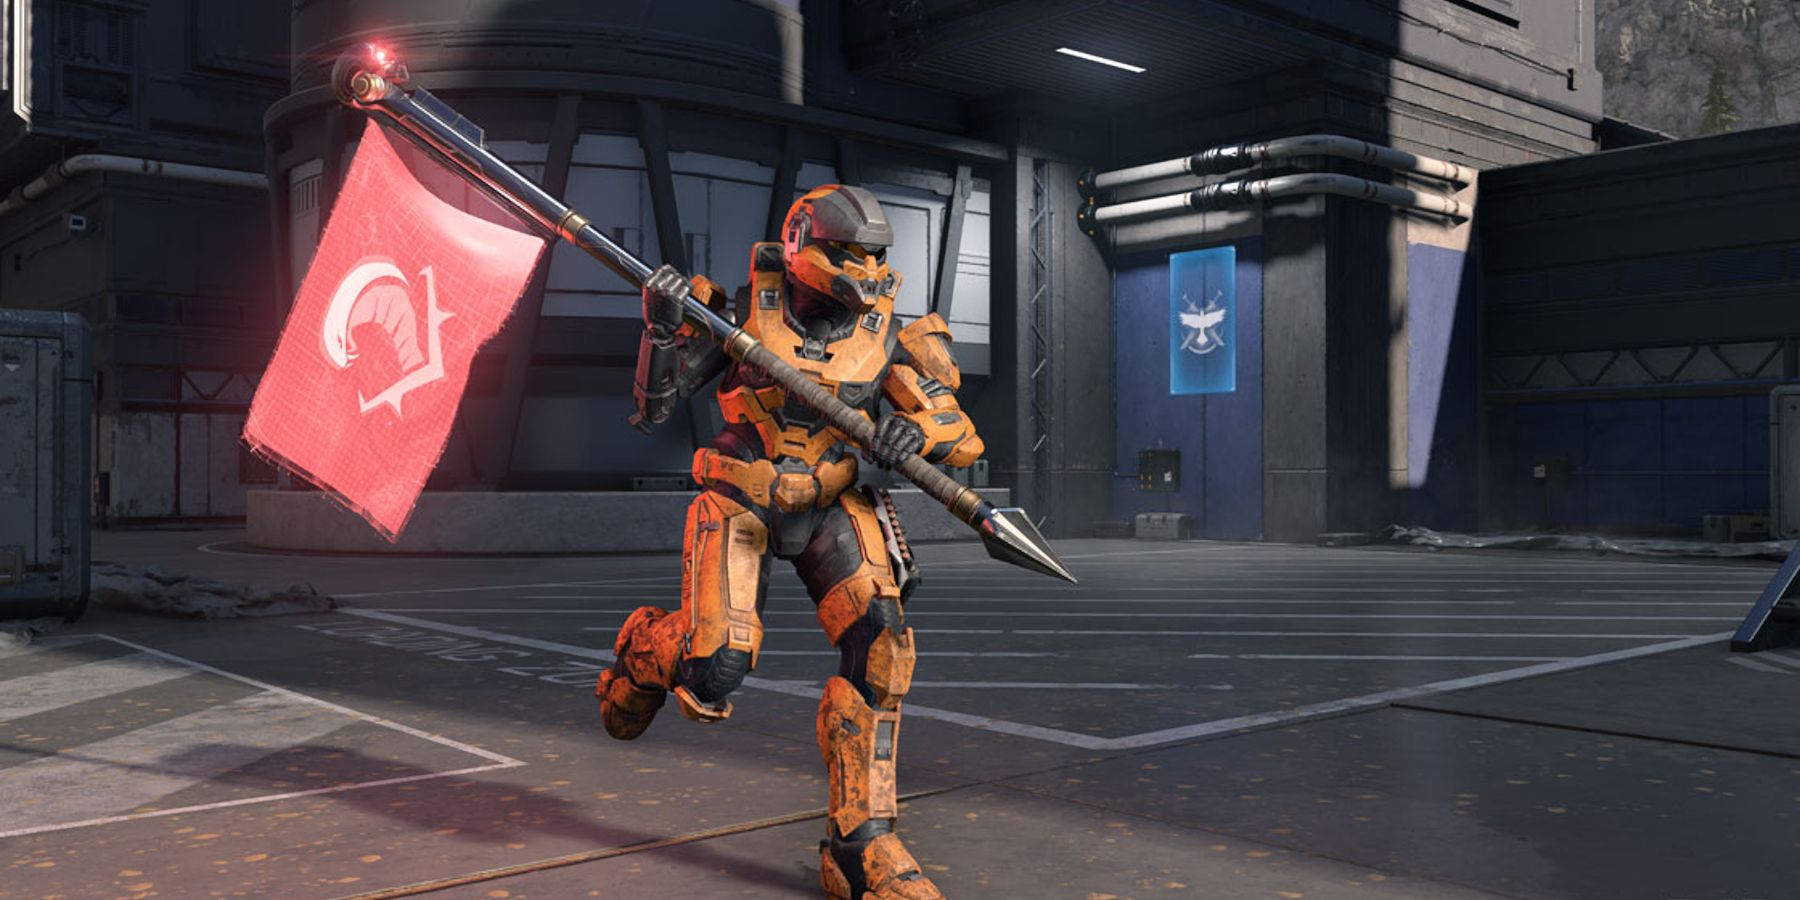 Nejnovější technický náhled Halo Infinite vylepšuje režim výkonu